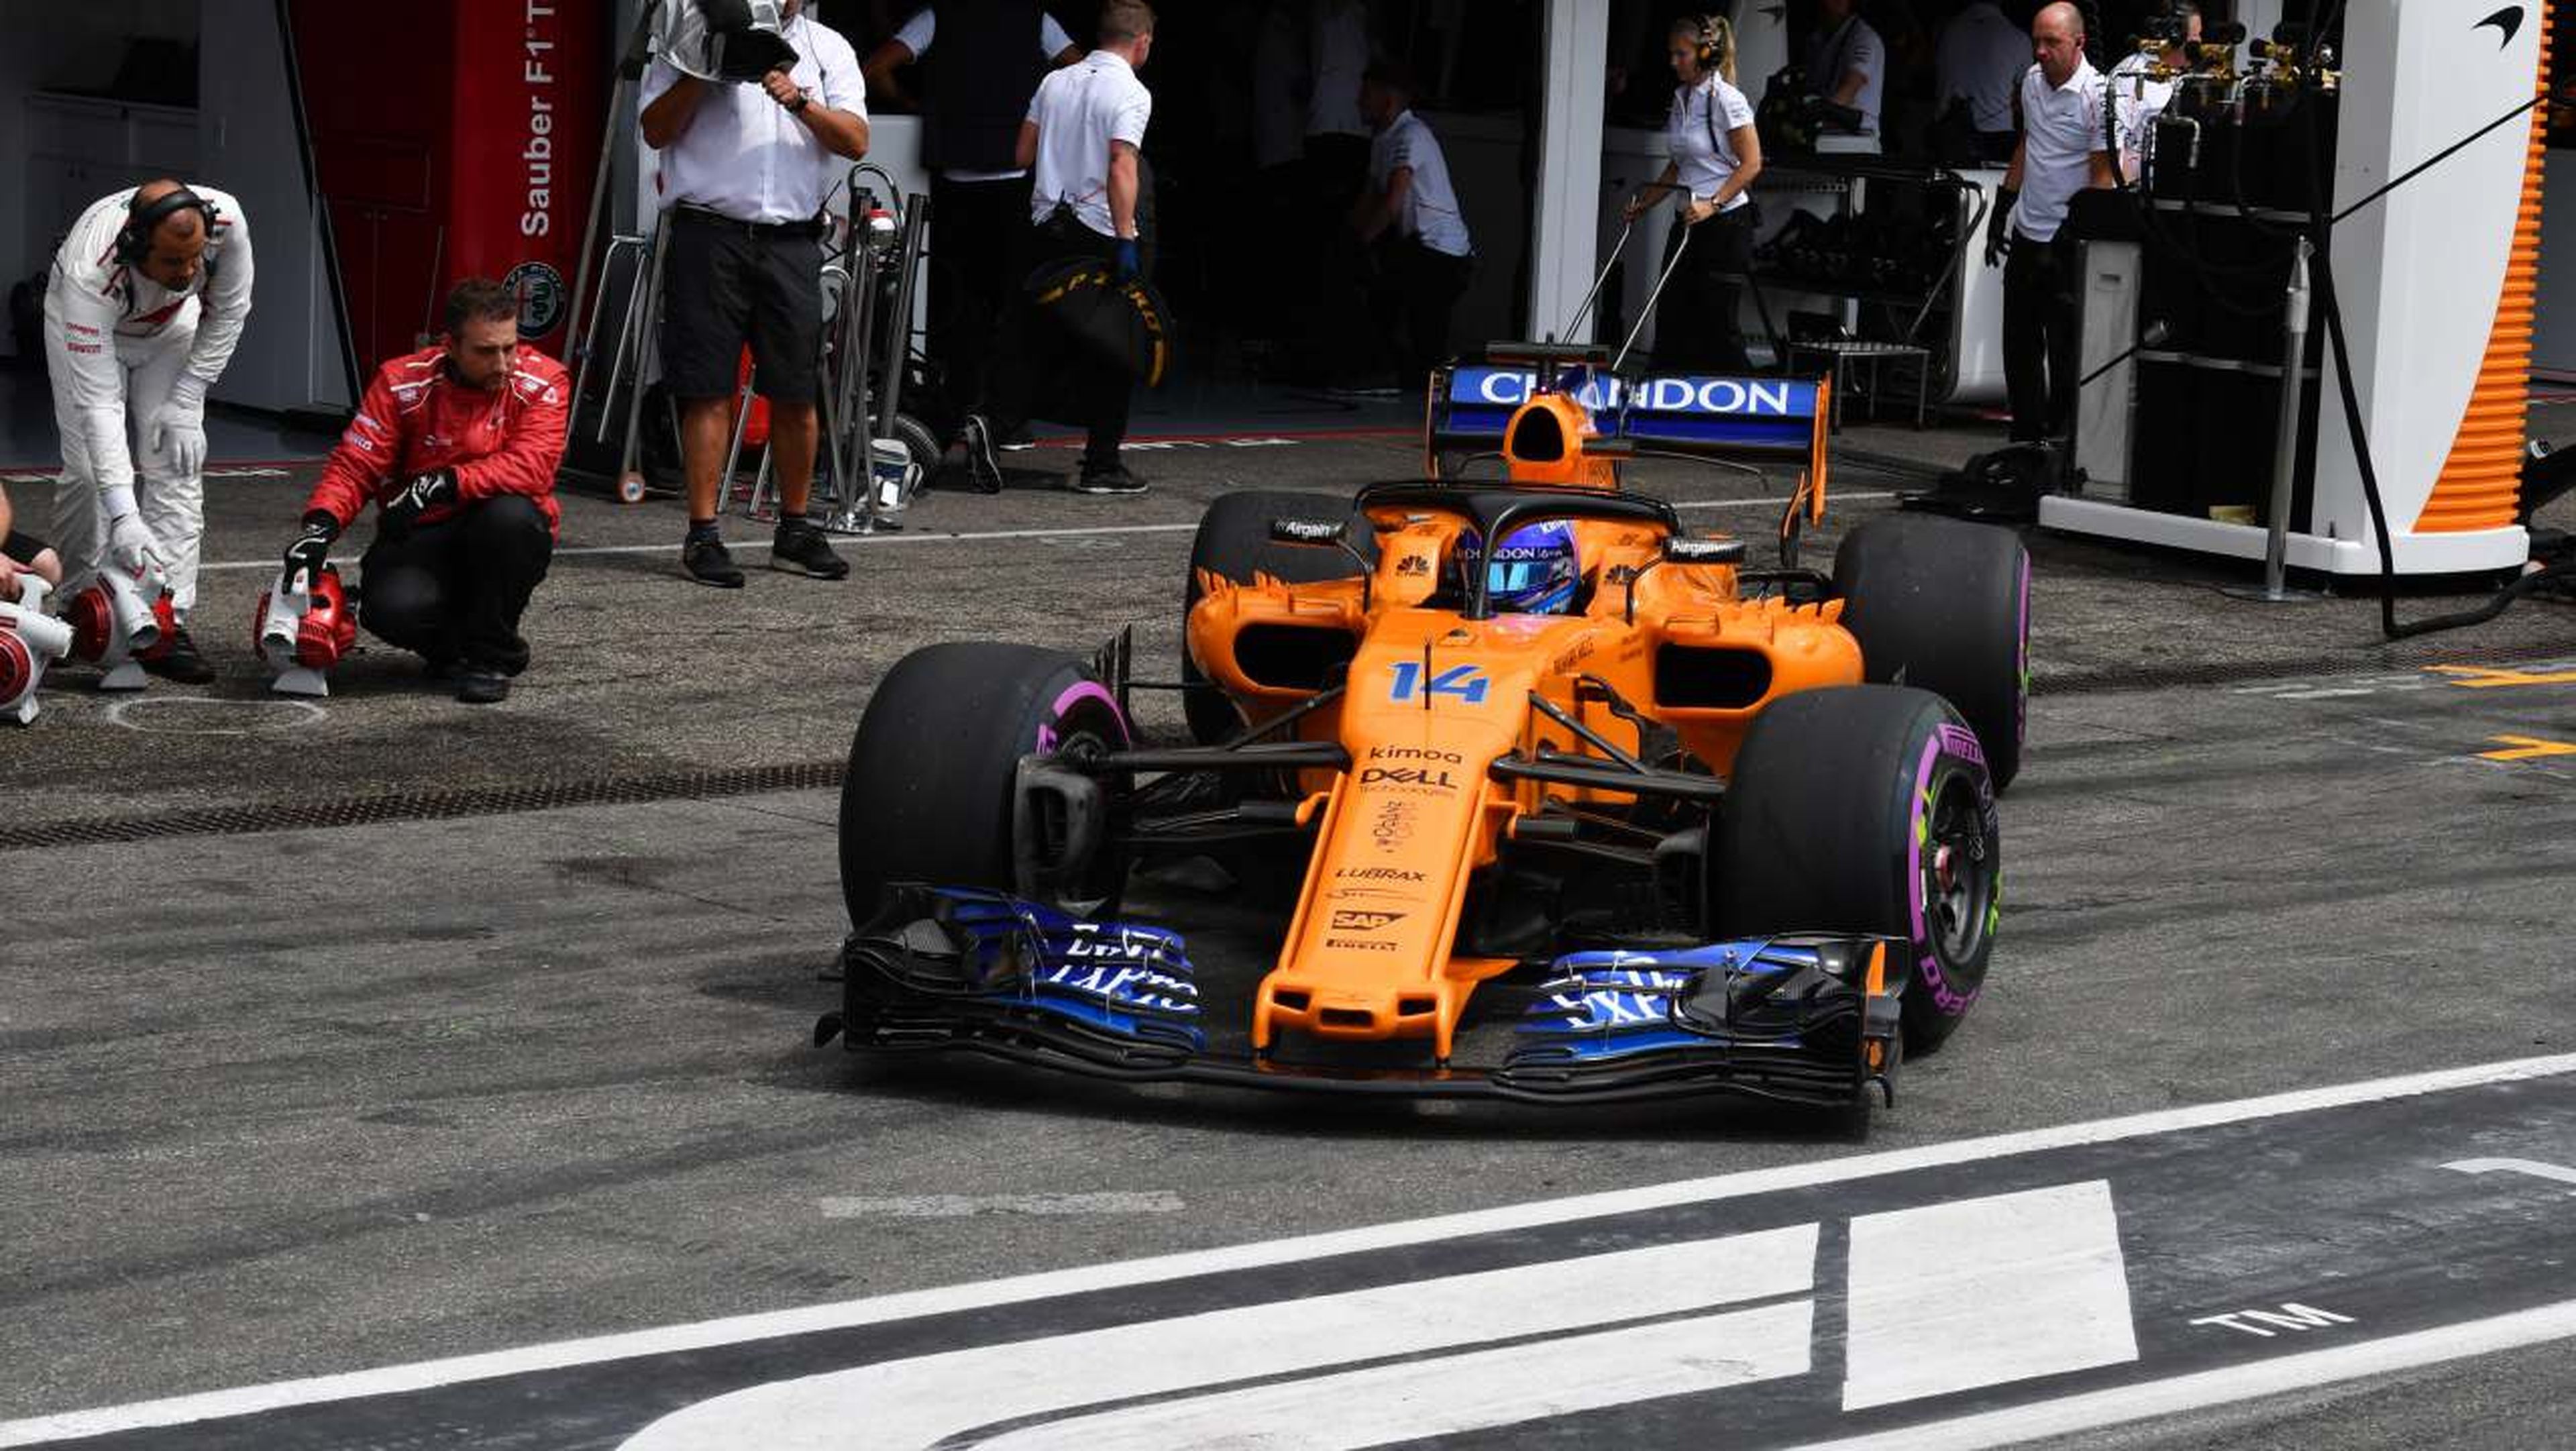 Cuándo y cuál fue la última pole position de Fernando Alonso en la F1?